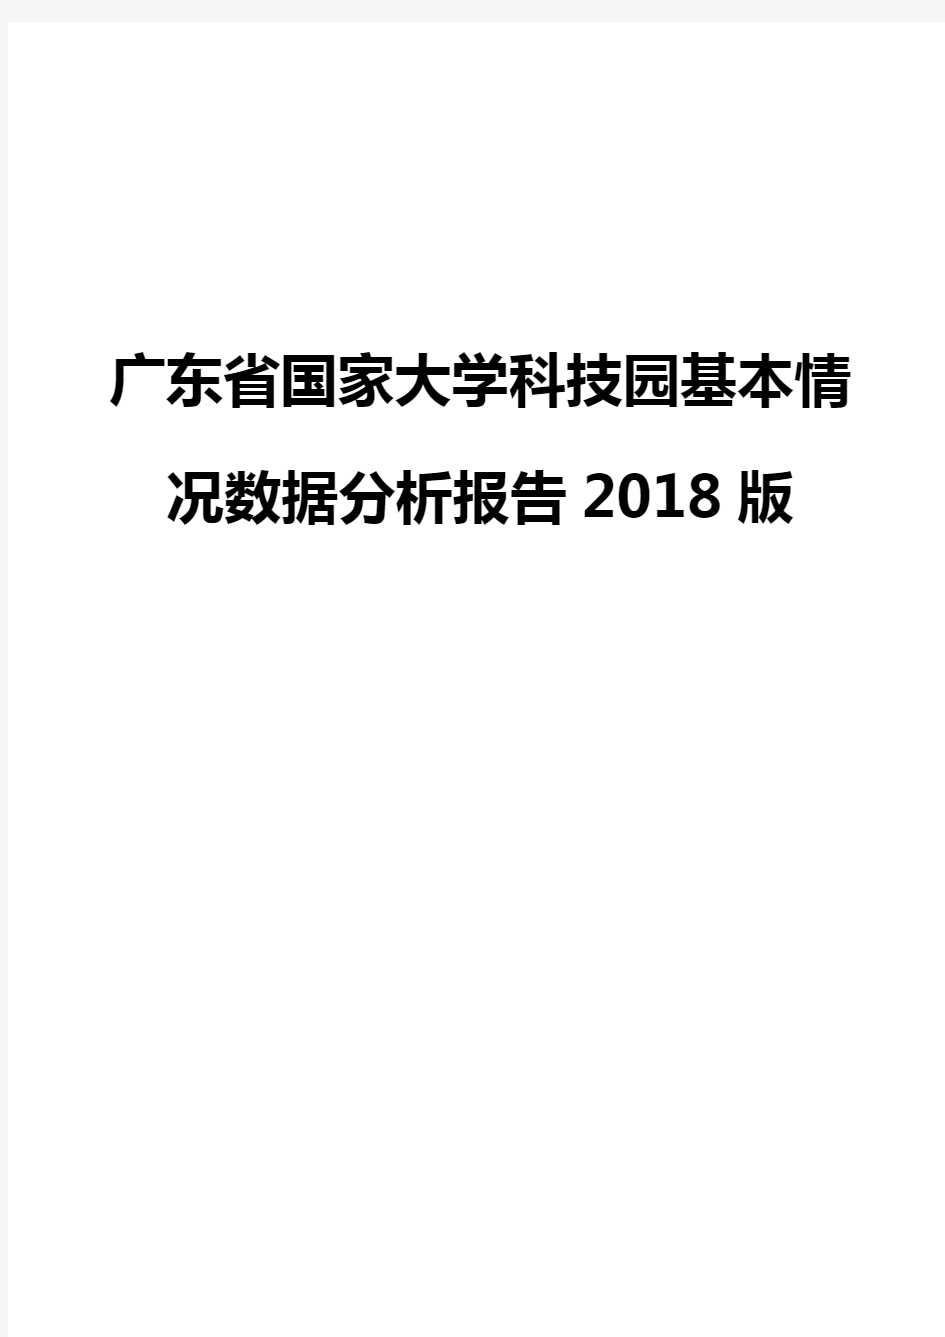 广东省国家大学科技园基本情况数据分析报告2018版